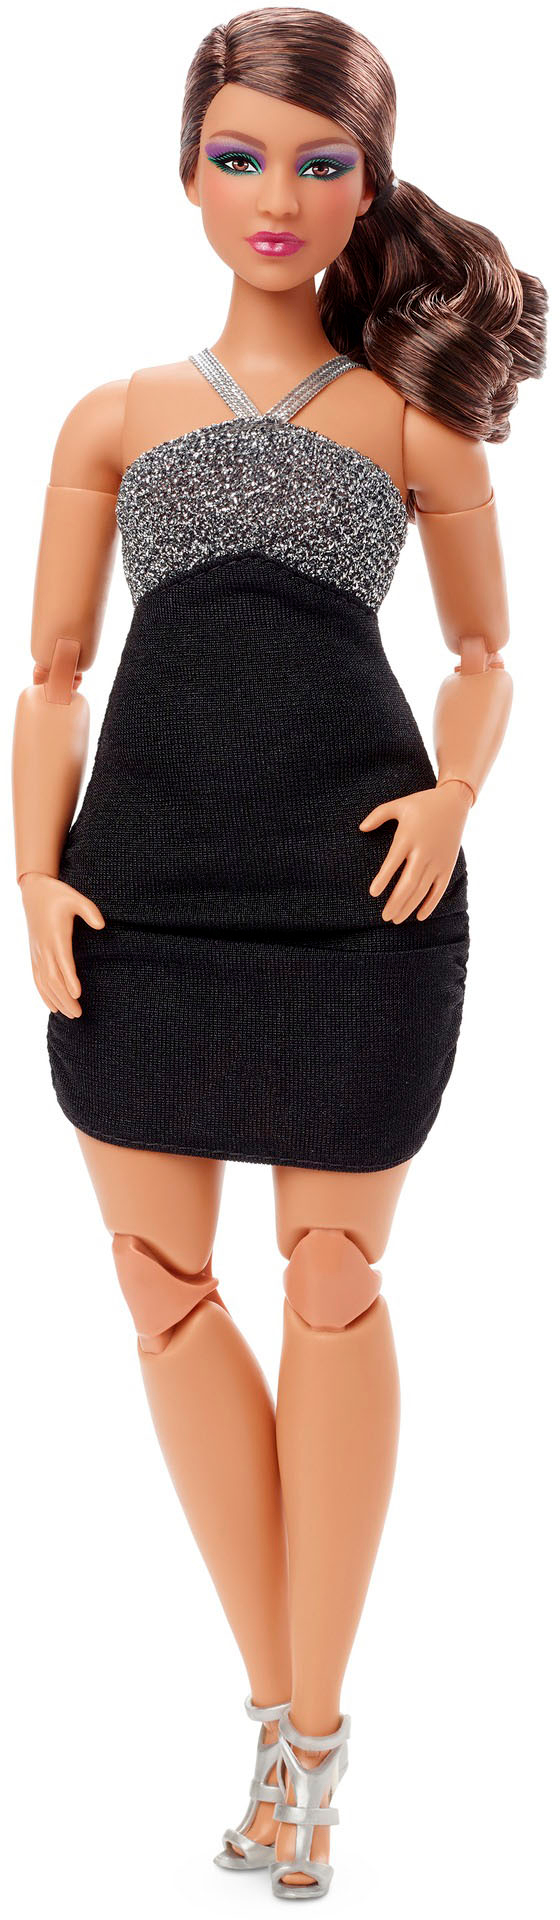 Indføre i morgen At bygge Barbie Signature Looks 11.5" Brunette Curvy Doll HBX95 - Best Buy